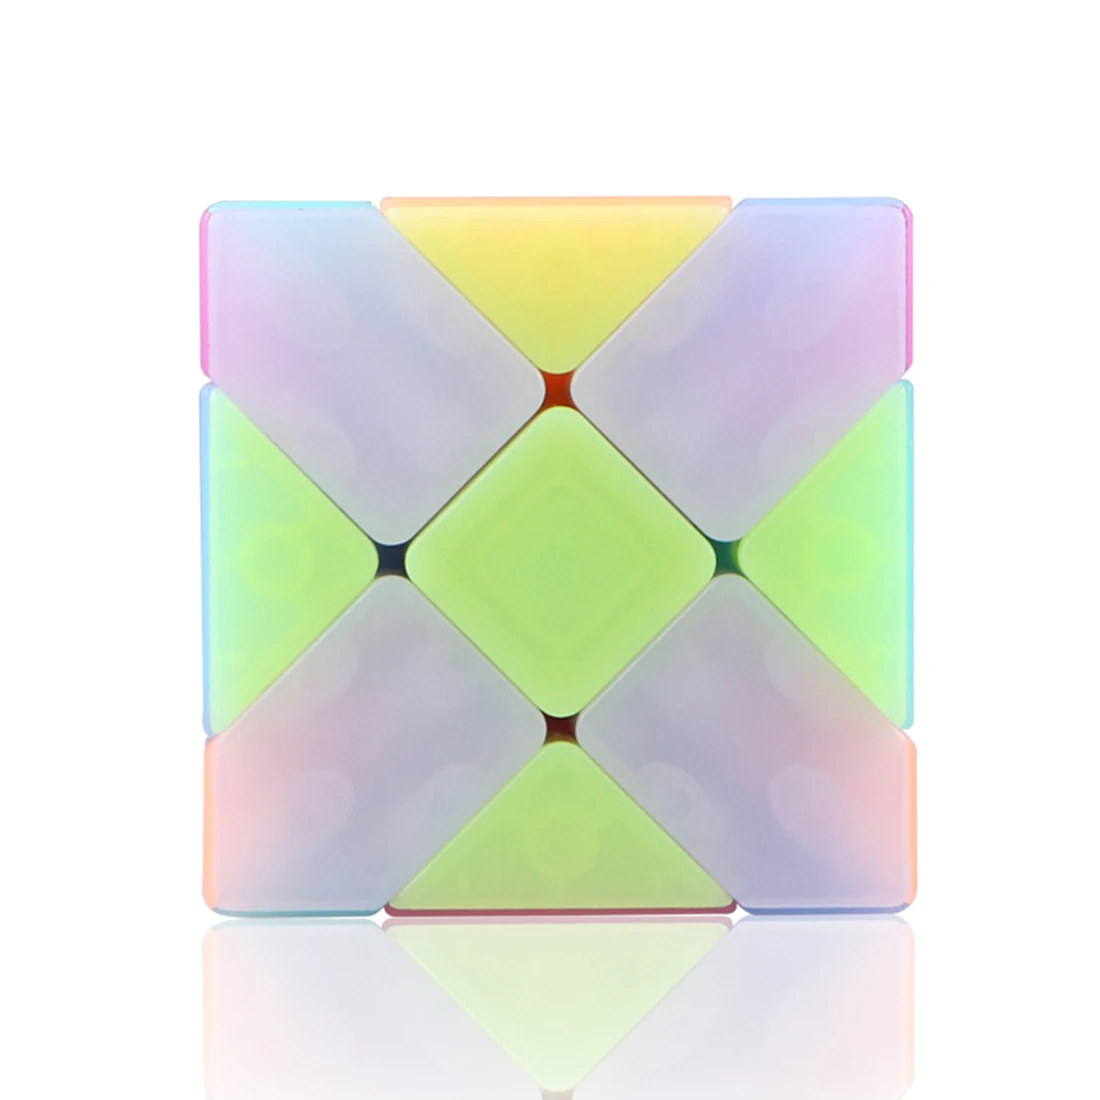 Qiyi Fisher волшебный куб головоломка магические Кубики-пазлы ранняя развивающая игрушка для детей куб-желе цвет